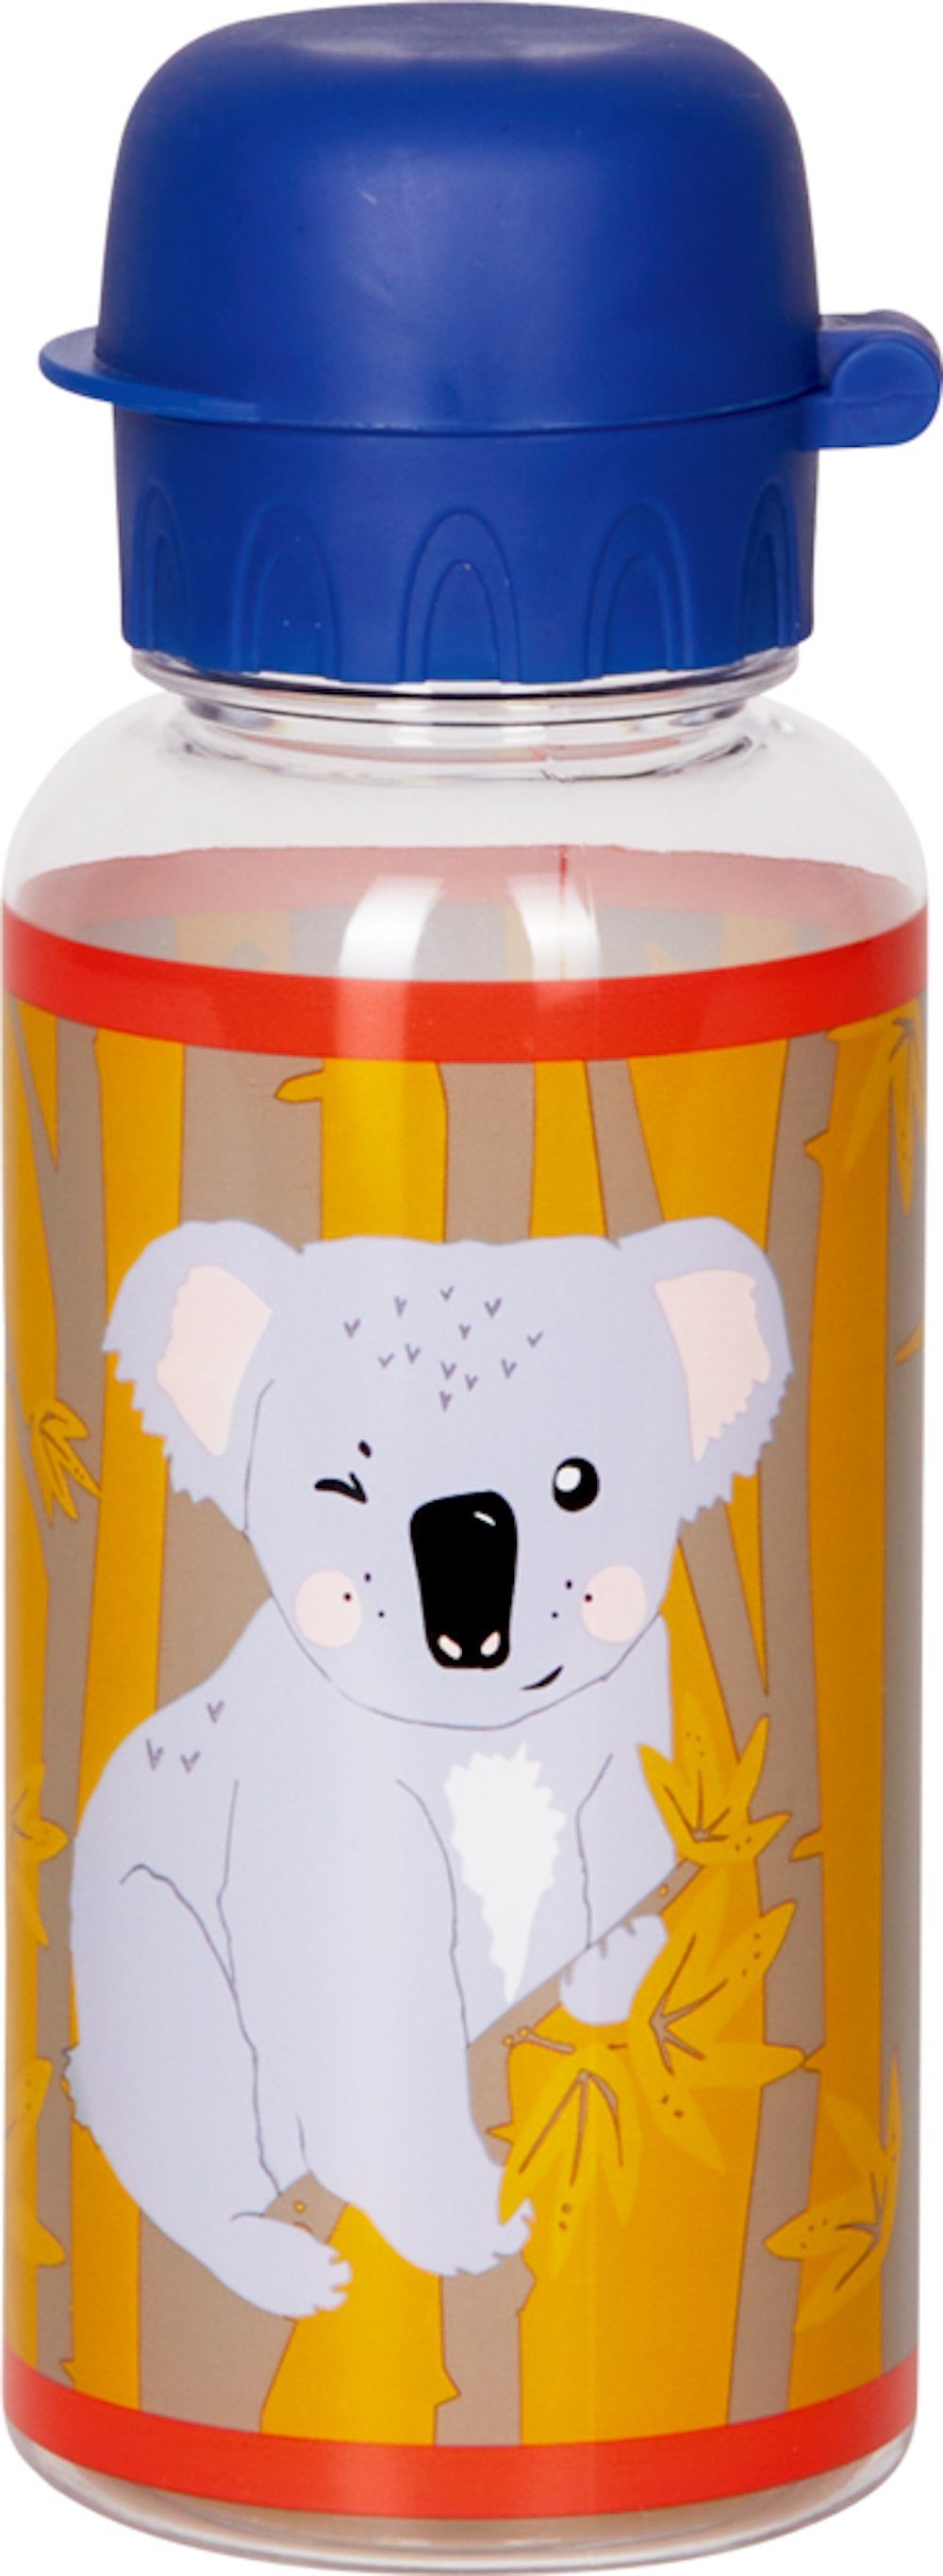 SPIEGELBURG Koala COPPENRATH Trinkaufsatz Namensfeld Freunde, Trinkflasche 0,4 l spülmaschinenfester DIE und Kleine